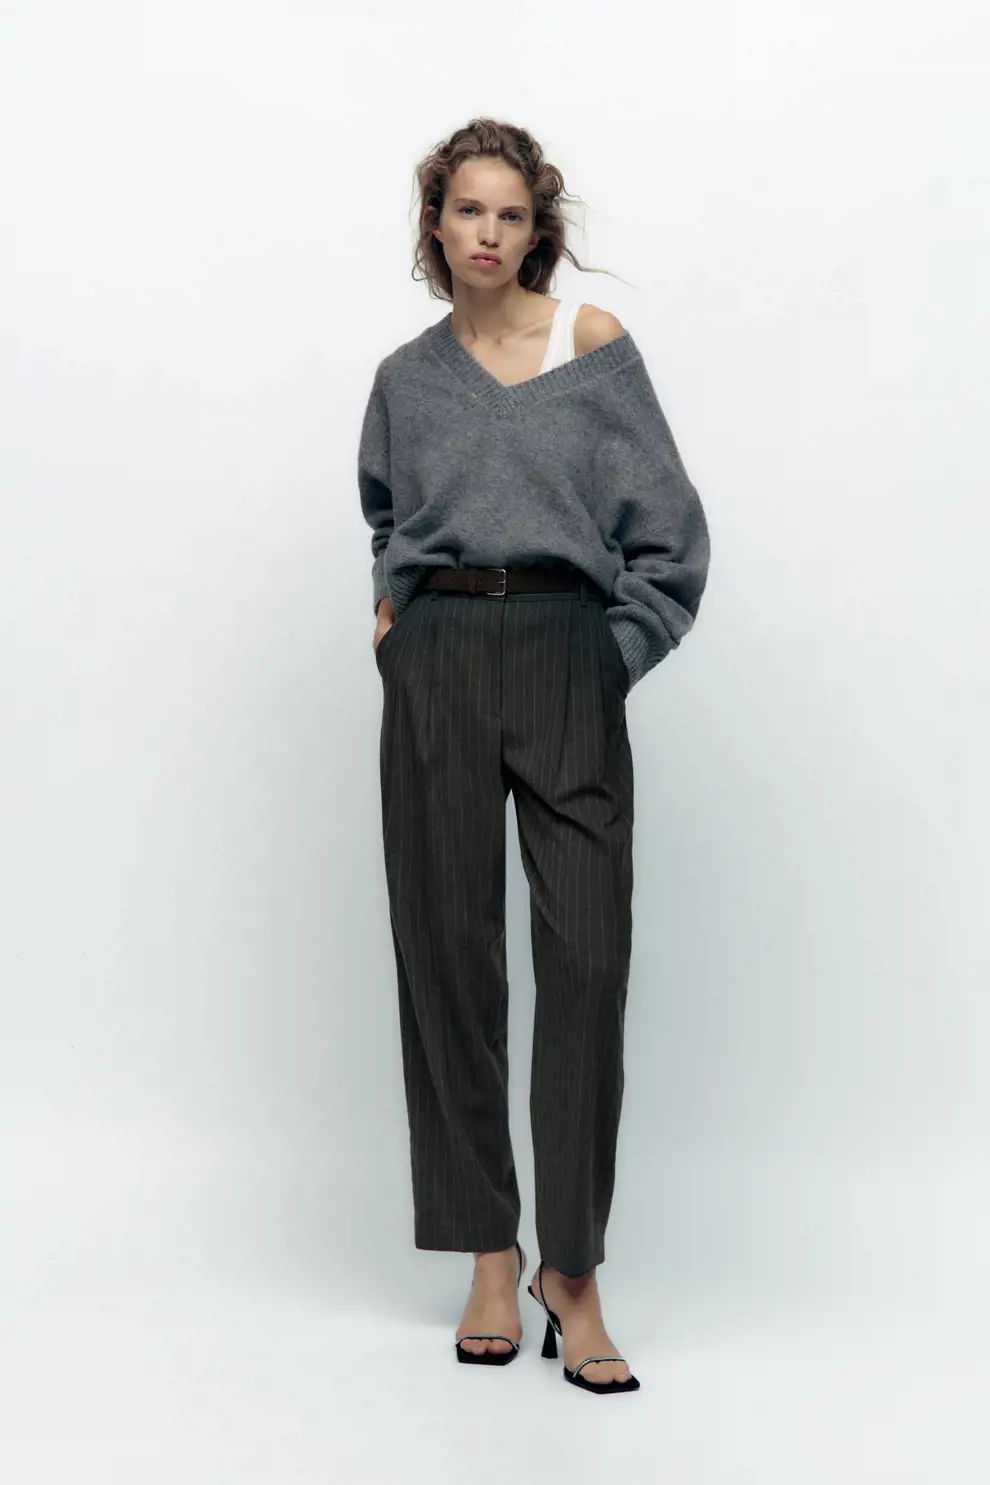 pantalones de Zara que estilizan recto pinzas